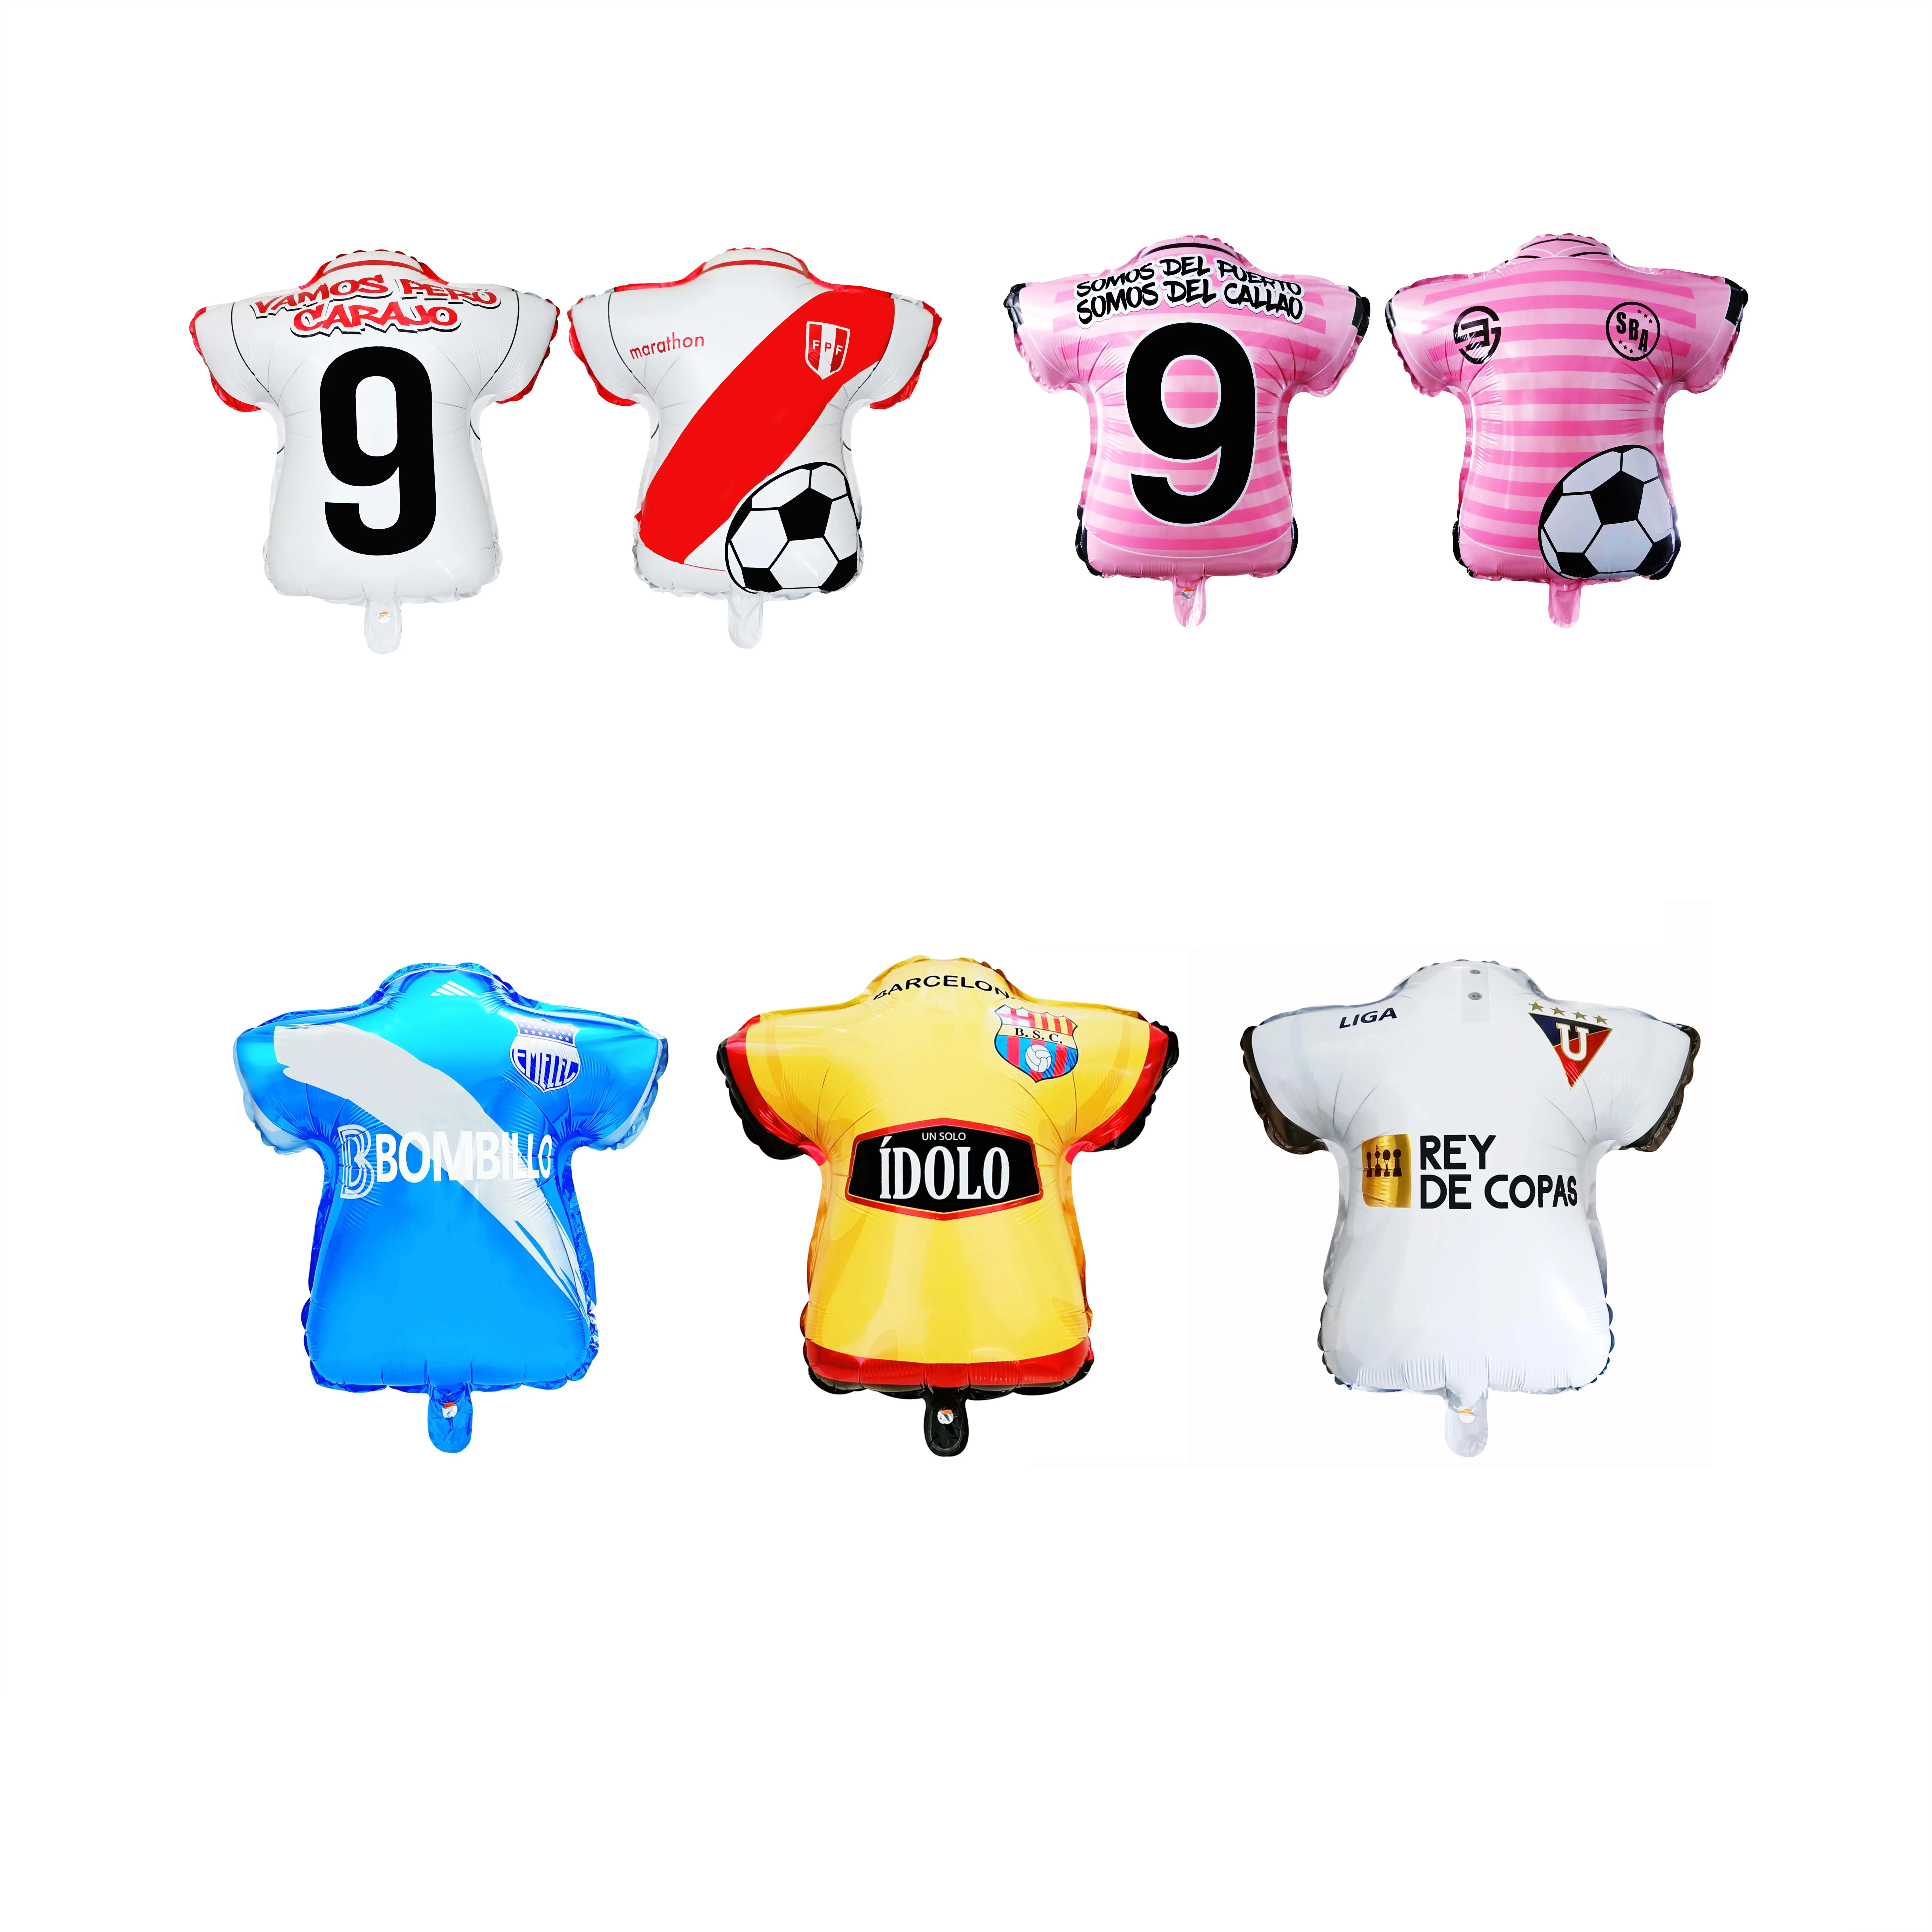 Tf Hot Koop Voetbal T-shirt Vormige Logo Premium Kwaliteit Helium Gevuld Folie Ballonnen Te Vieren De Wk Voor Decoratie